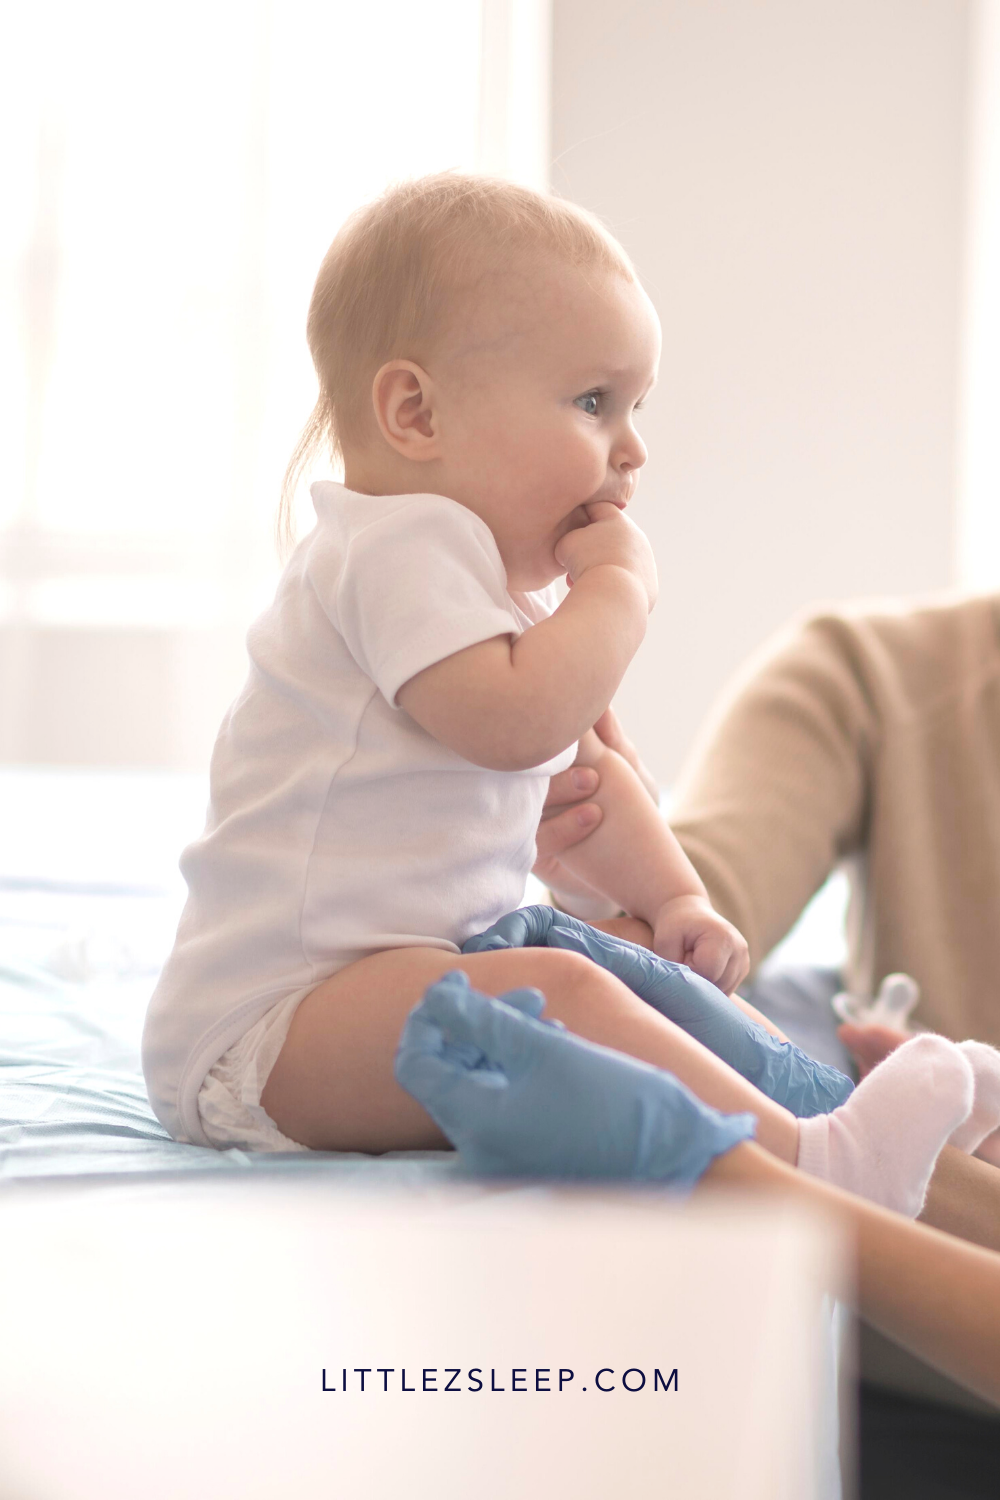 Baby receiving vaccines